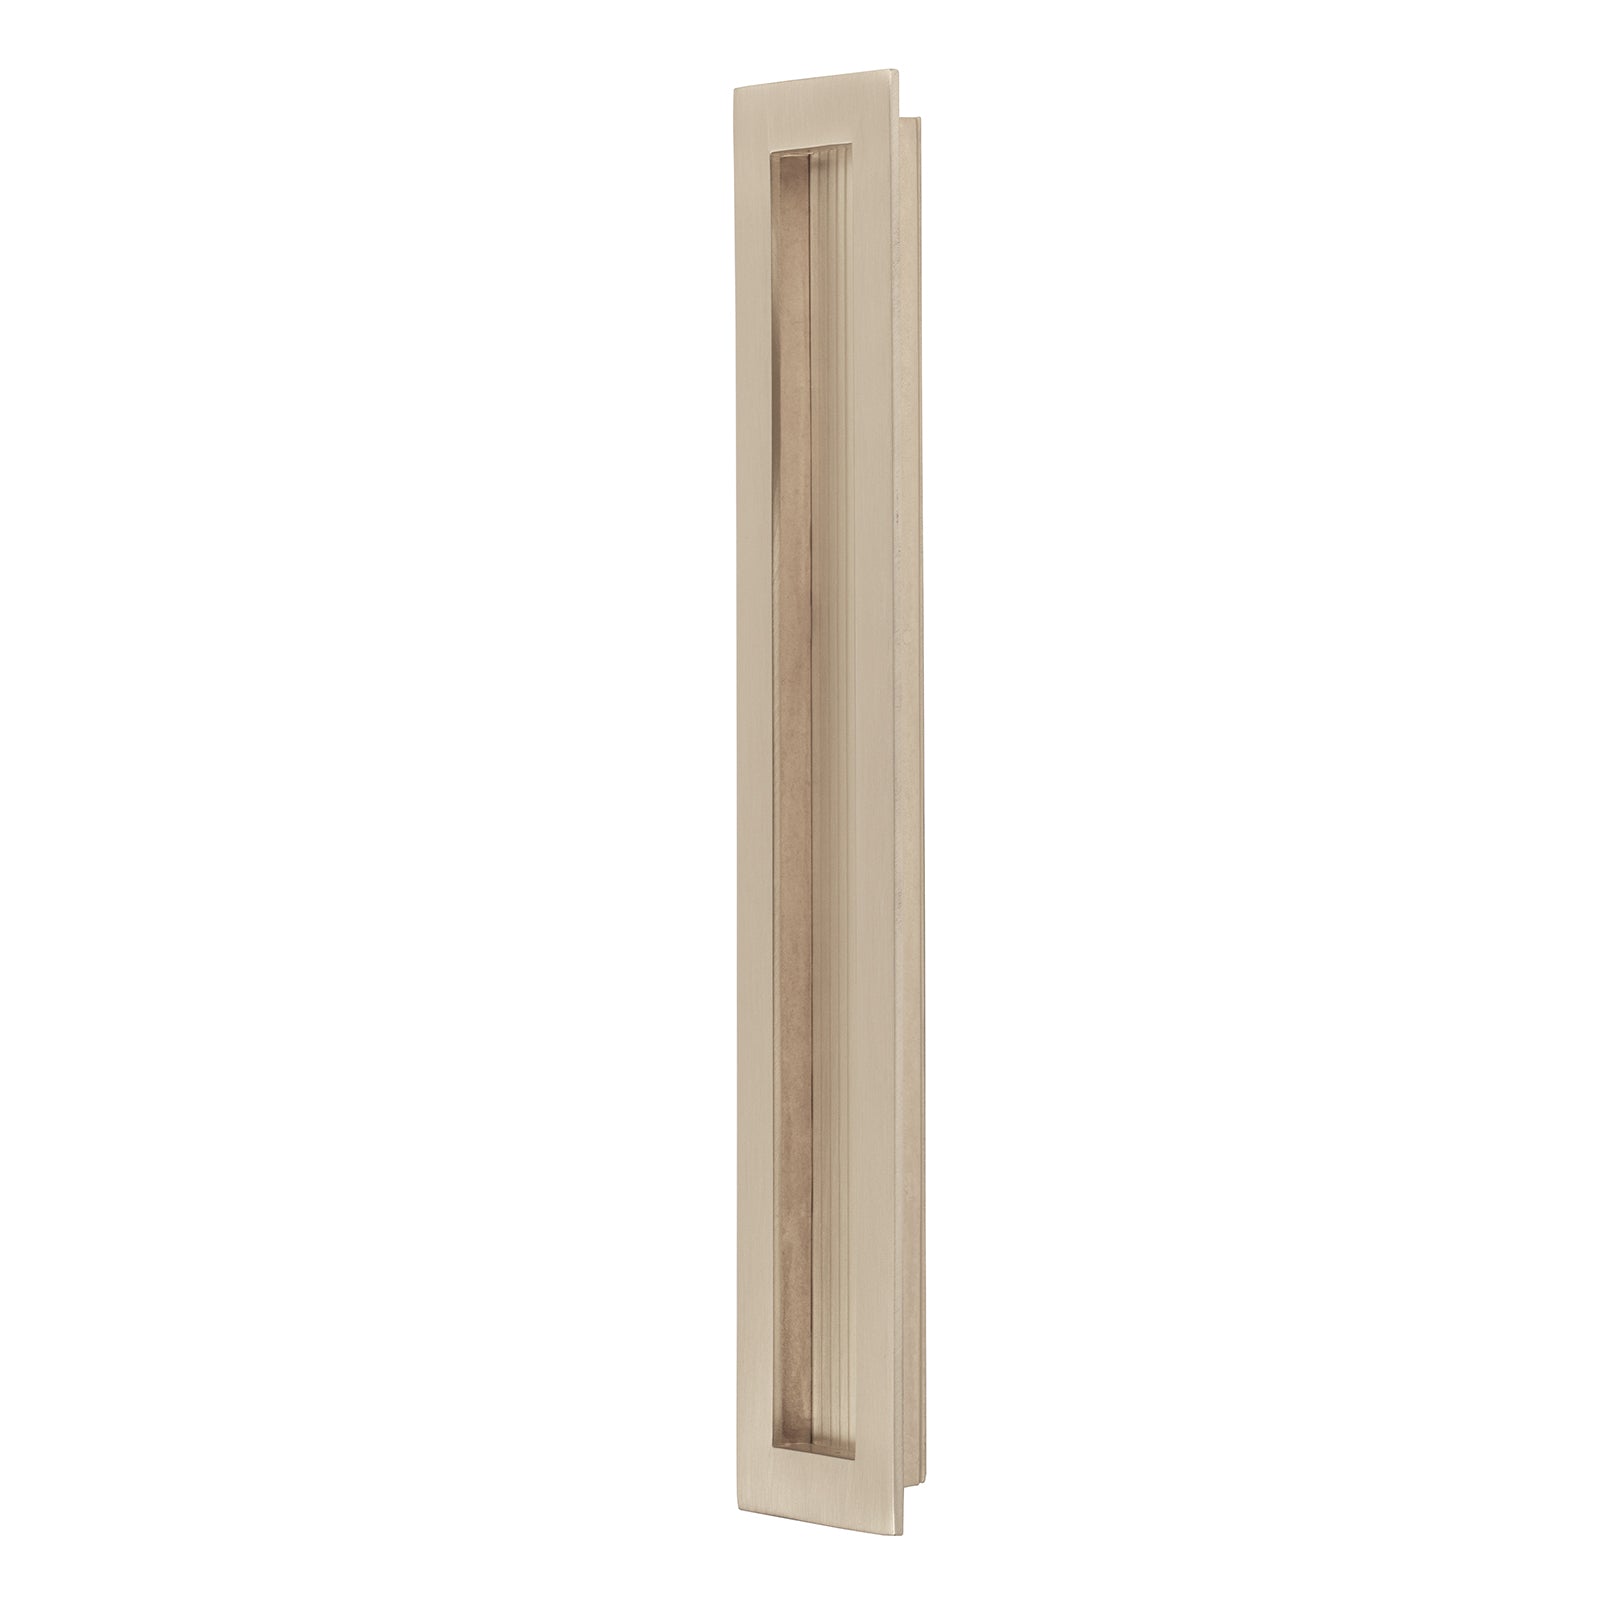 long rectangular flush pull handle for pocket doors